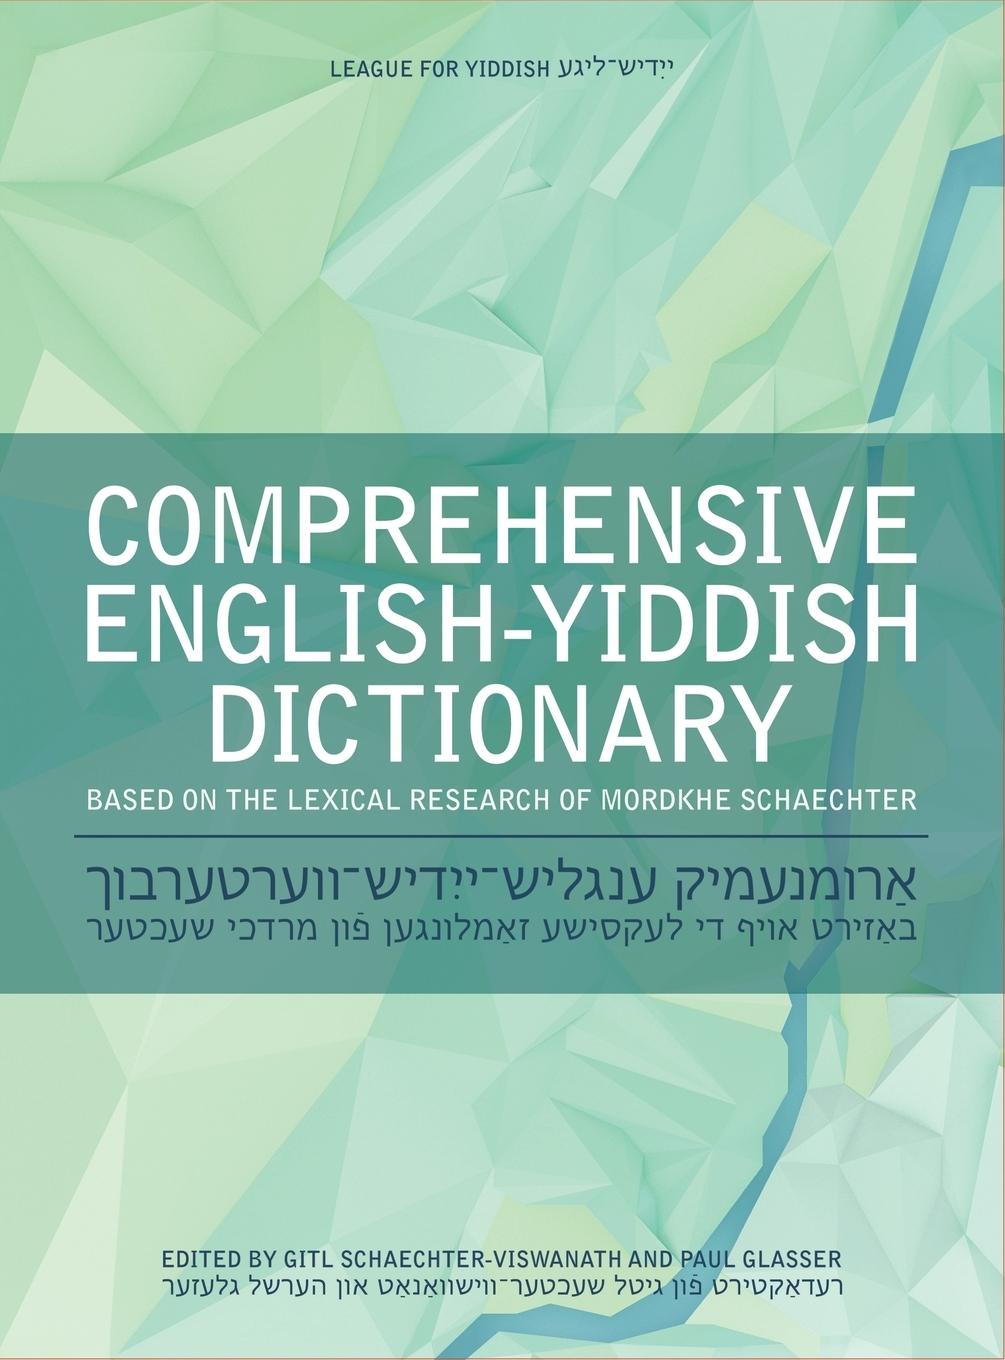 COMPREHENSIVE ENGLISH-YIDDISH